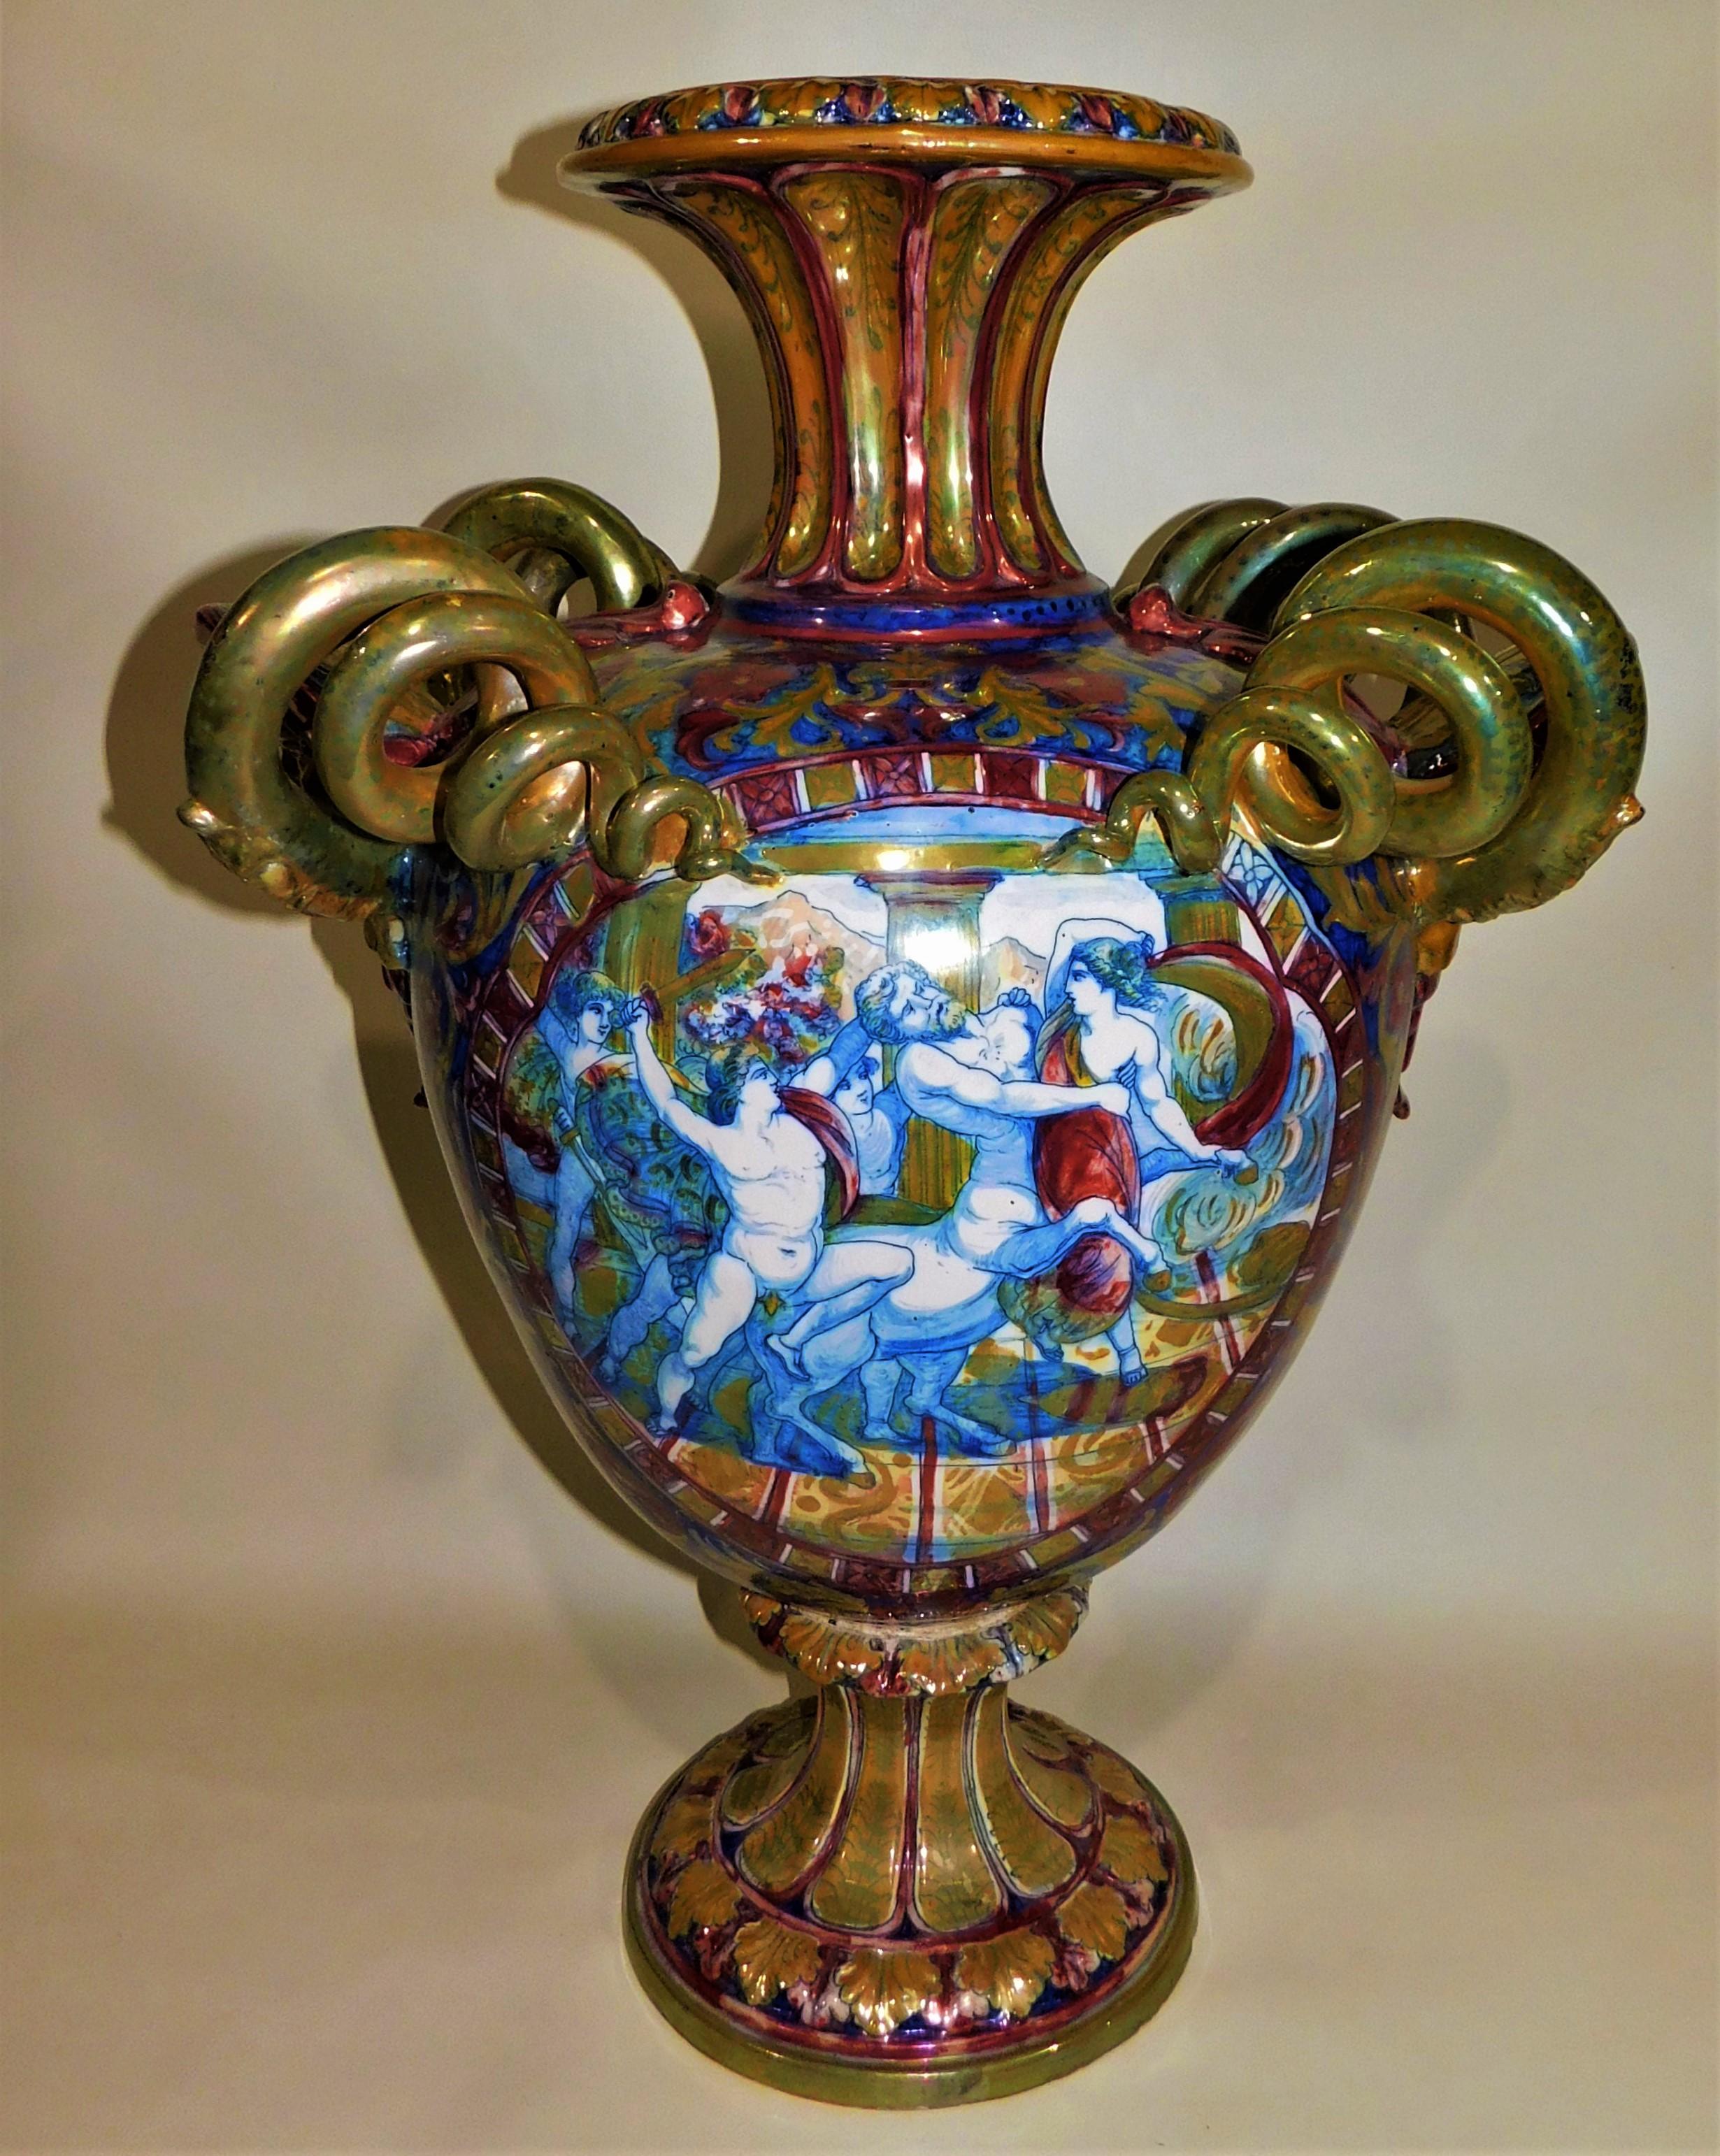 En provenance d'Italie, cet imposant vase en forme d'urne, peint à la main en céramique lustrée Majolica, avec des poignées en forme de serpent, mesure plus de deux pieds de haut. Il s'agit principalement d'un vase de style figuratif, avec de belles